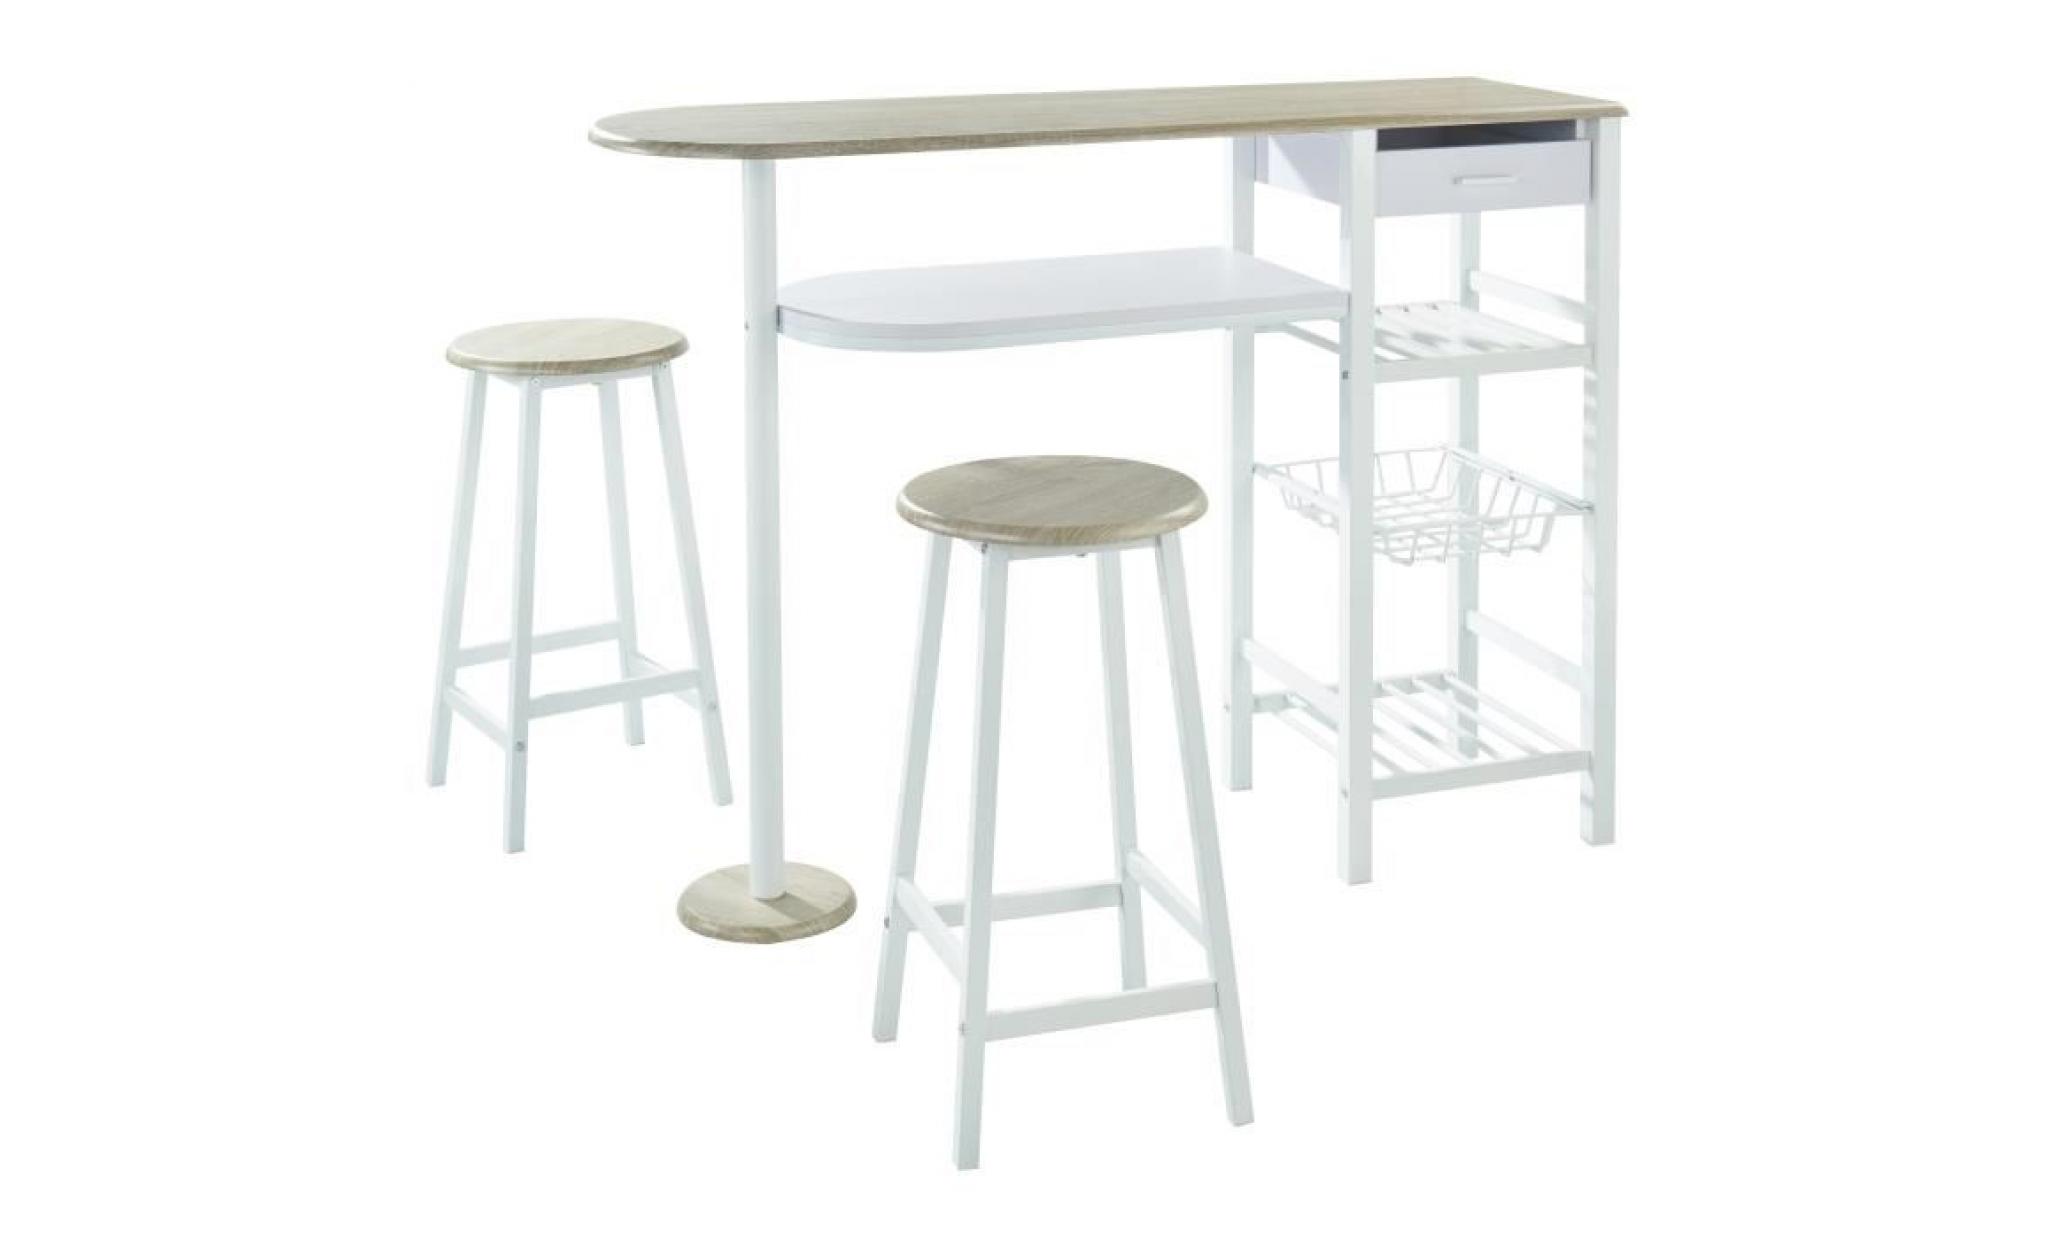 julia ensemble table bar 2 personnes style contemporain en métal laqué blanc et mdf décor chêne + 2 tabourets   l 119 x l 37 cm